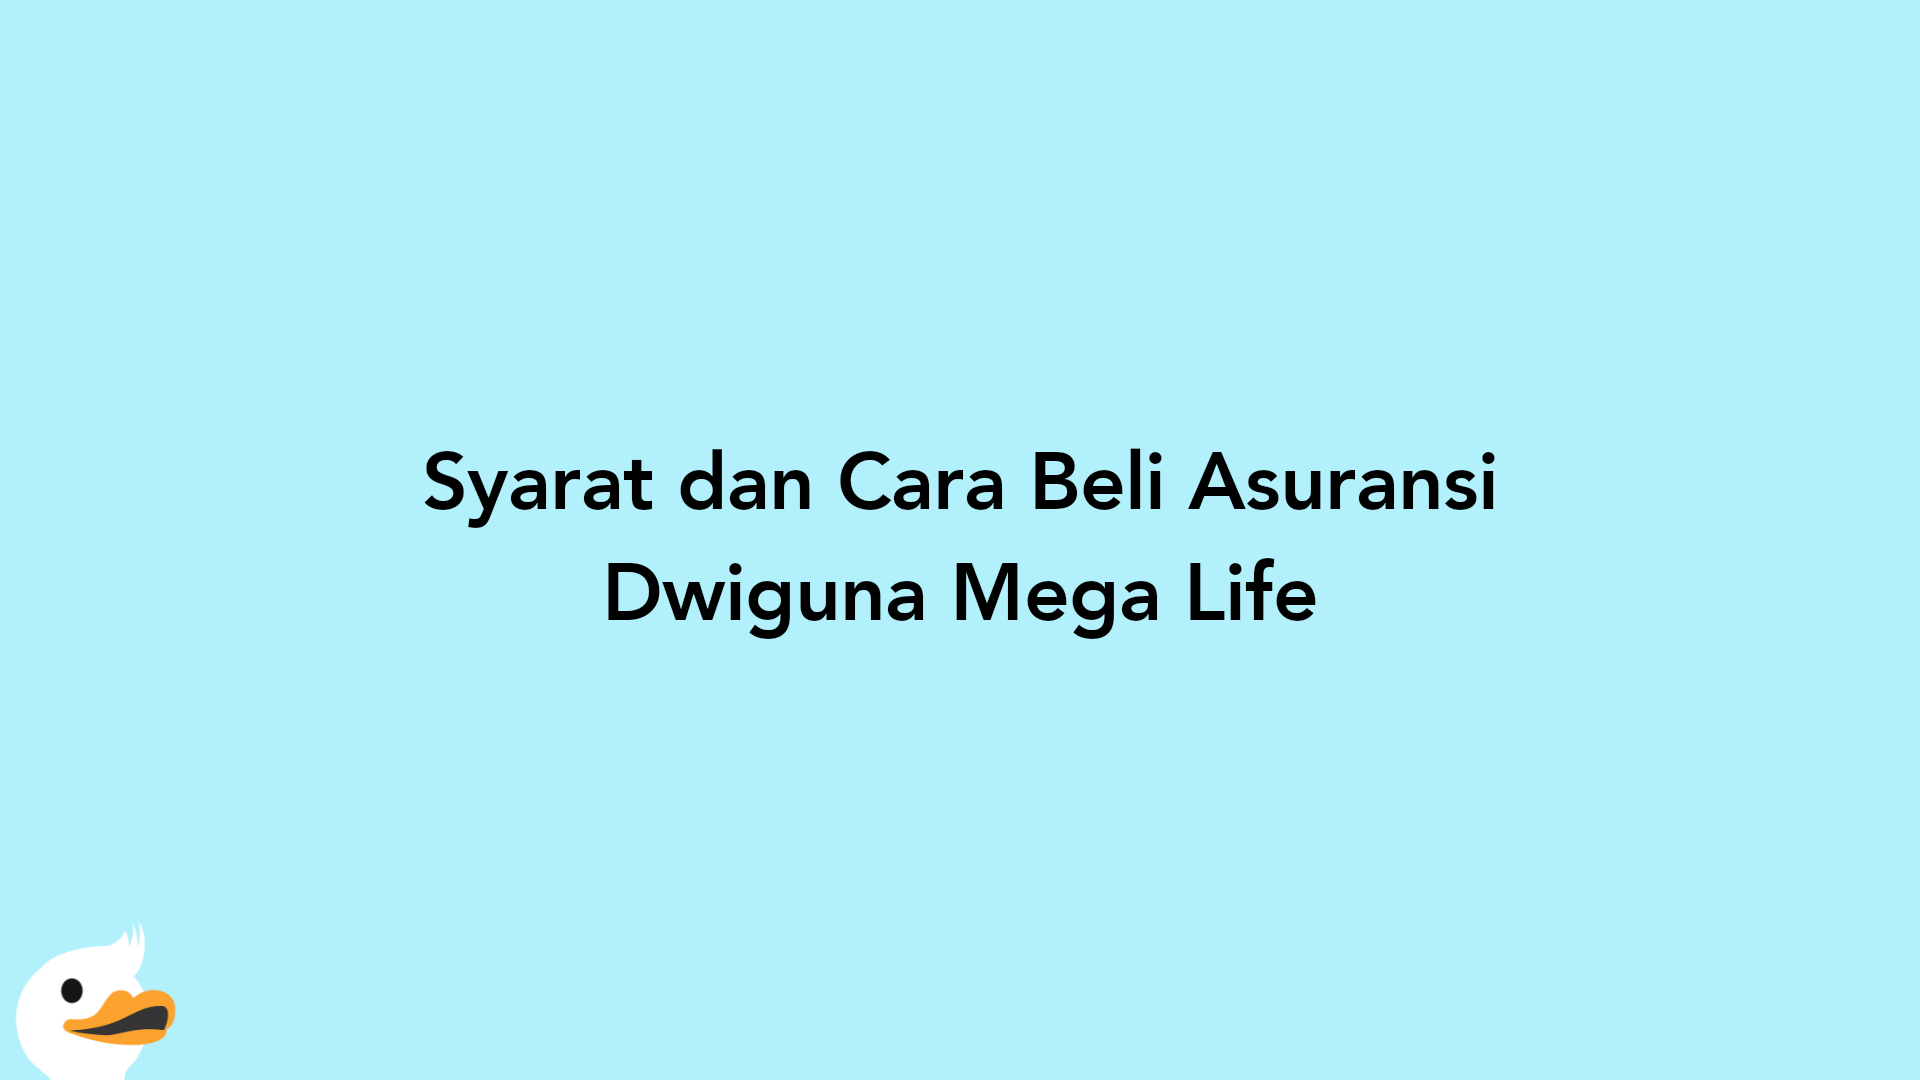 Syarat dan Cara Beli Asuransi Dwiguna Mega Life